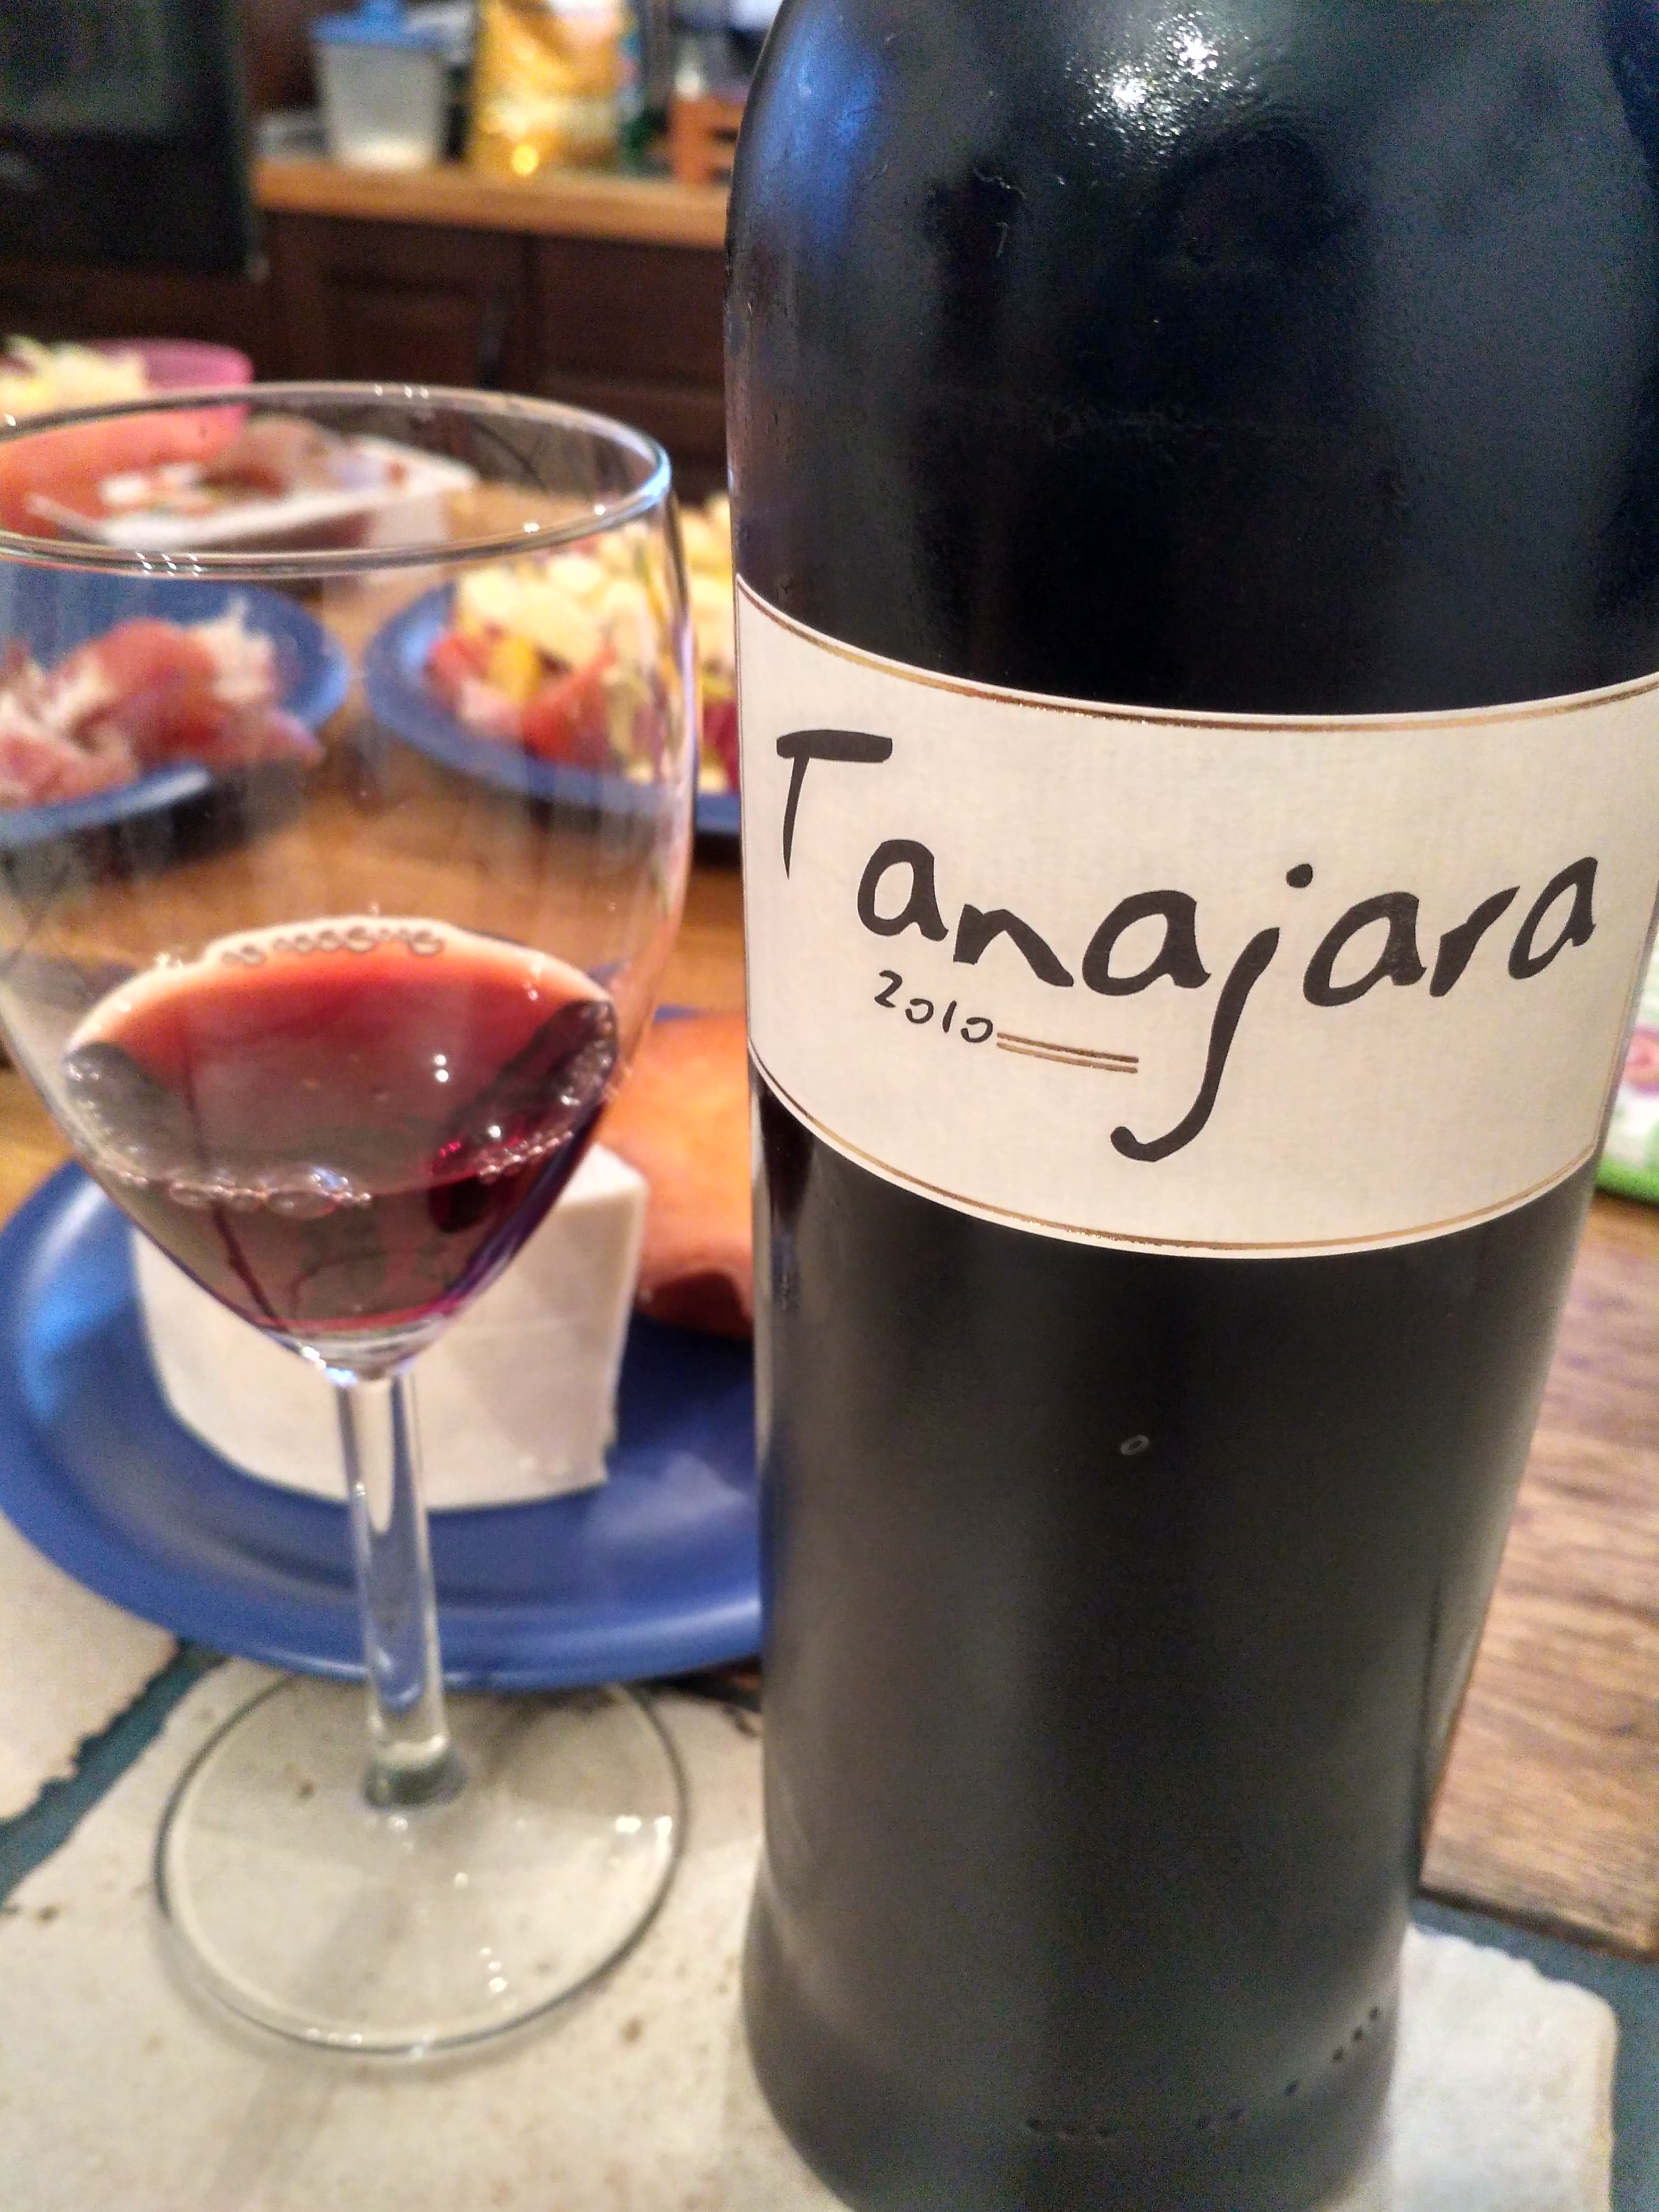 Tanajara 2010 vino tinto de El Hierro